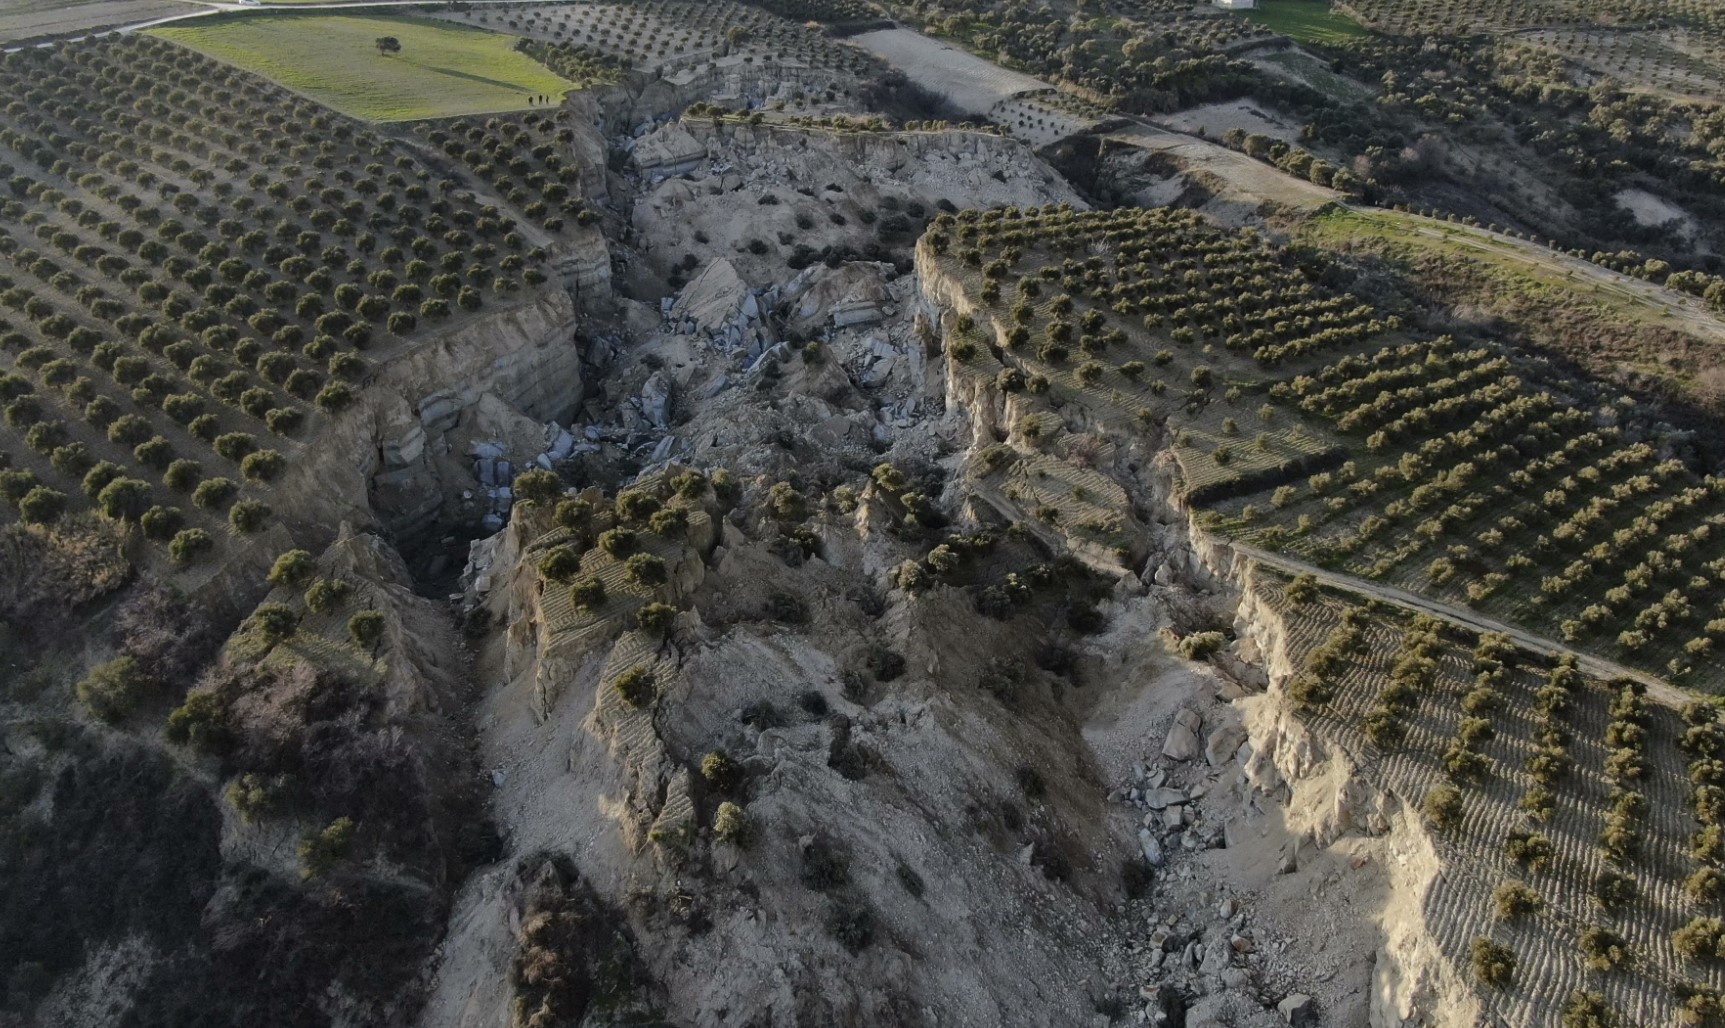 Страшное видео показывает, как оливковая роща превратилась в гигантский каньон после того, как землетрясение в Турции раскололо землю огромными трещинами.